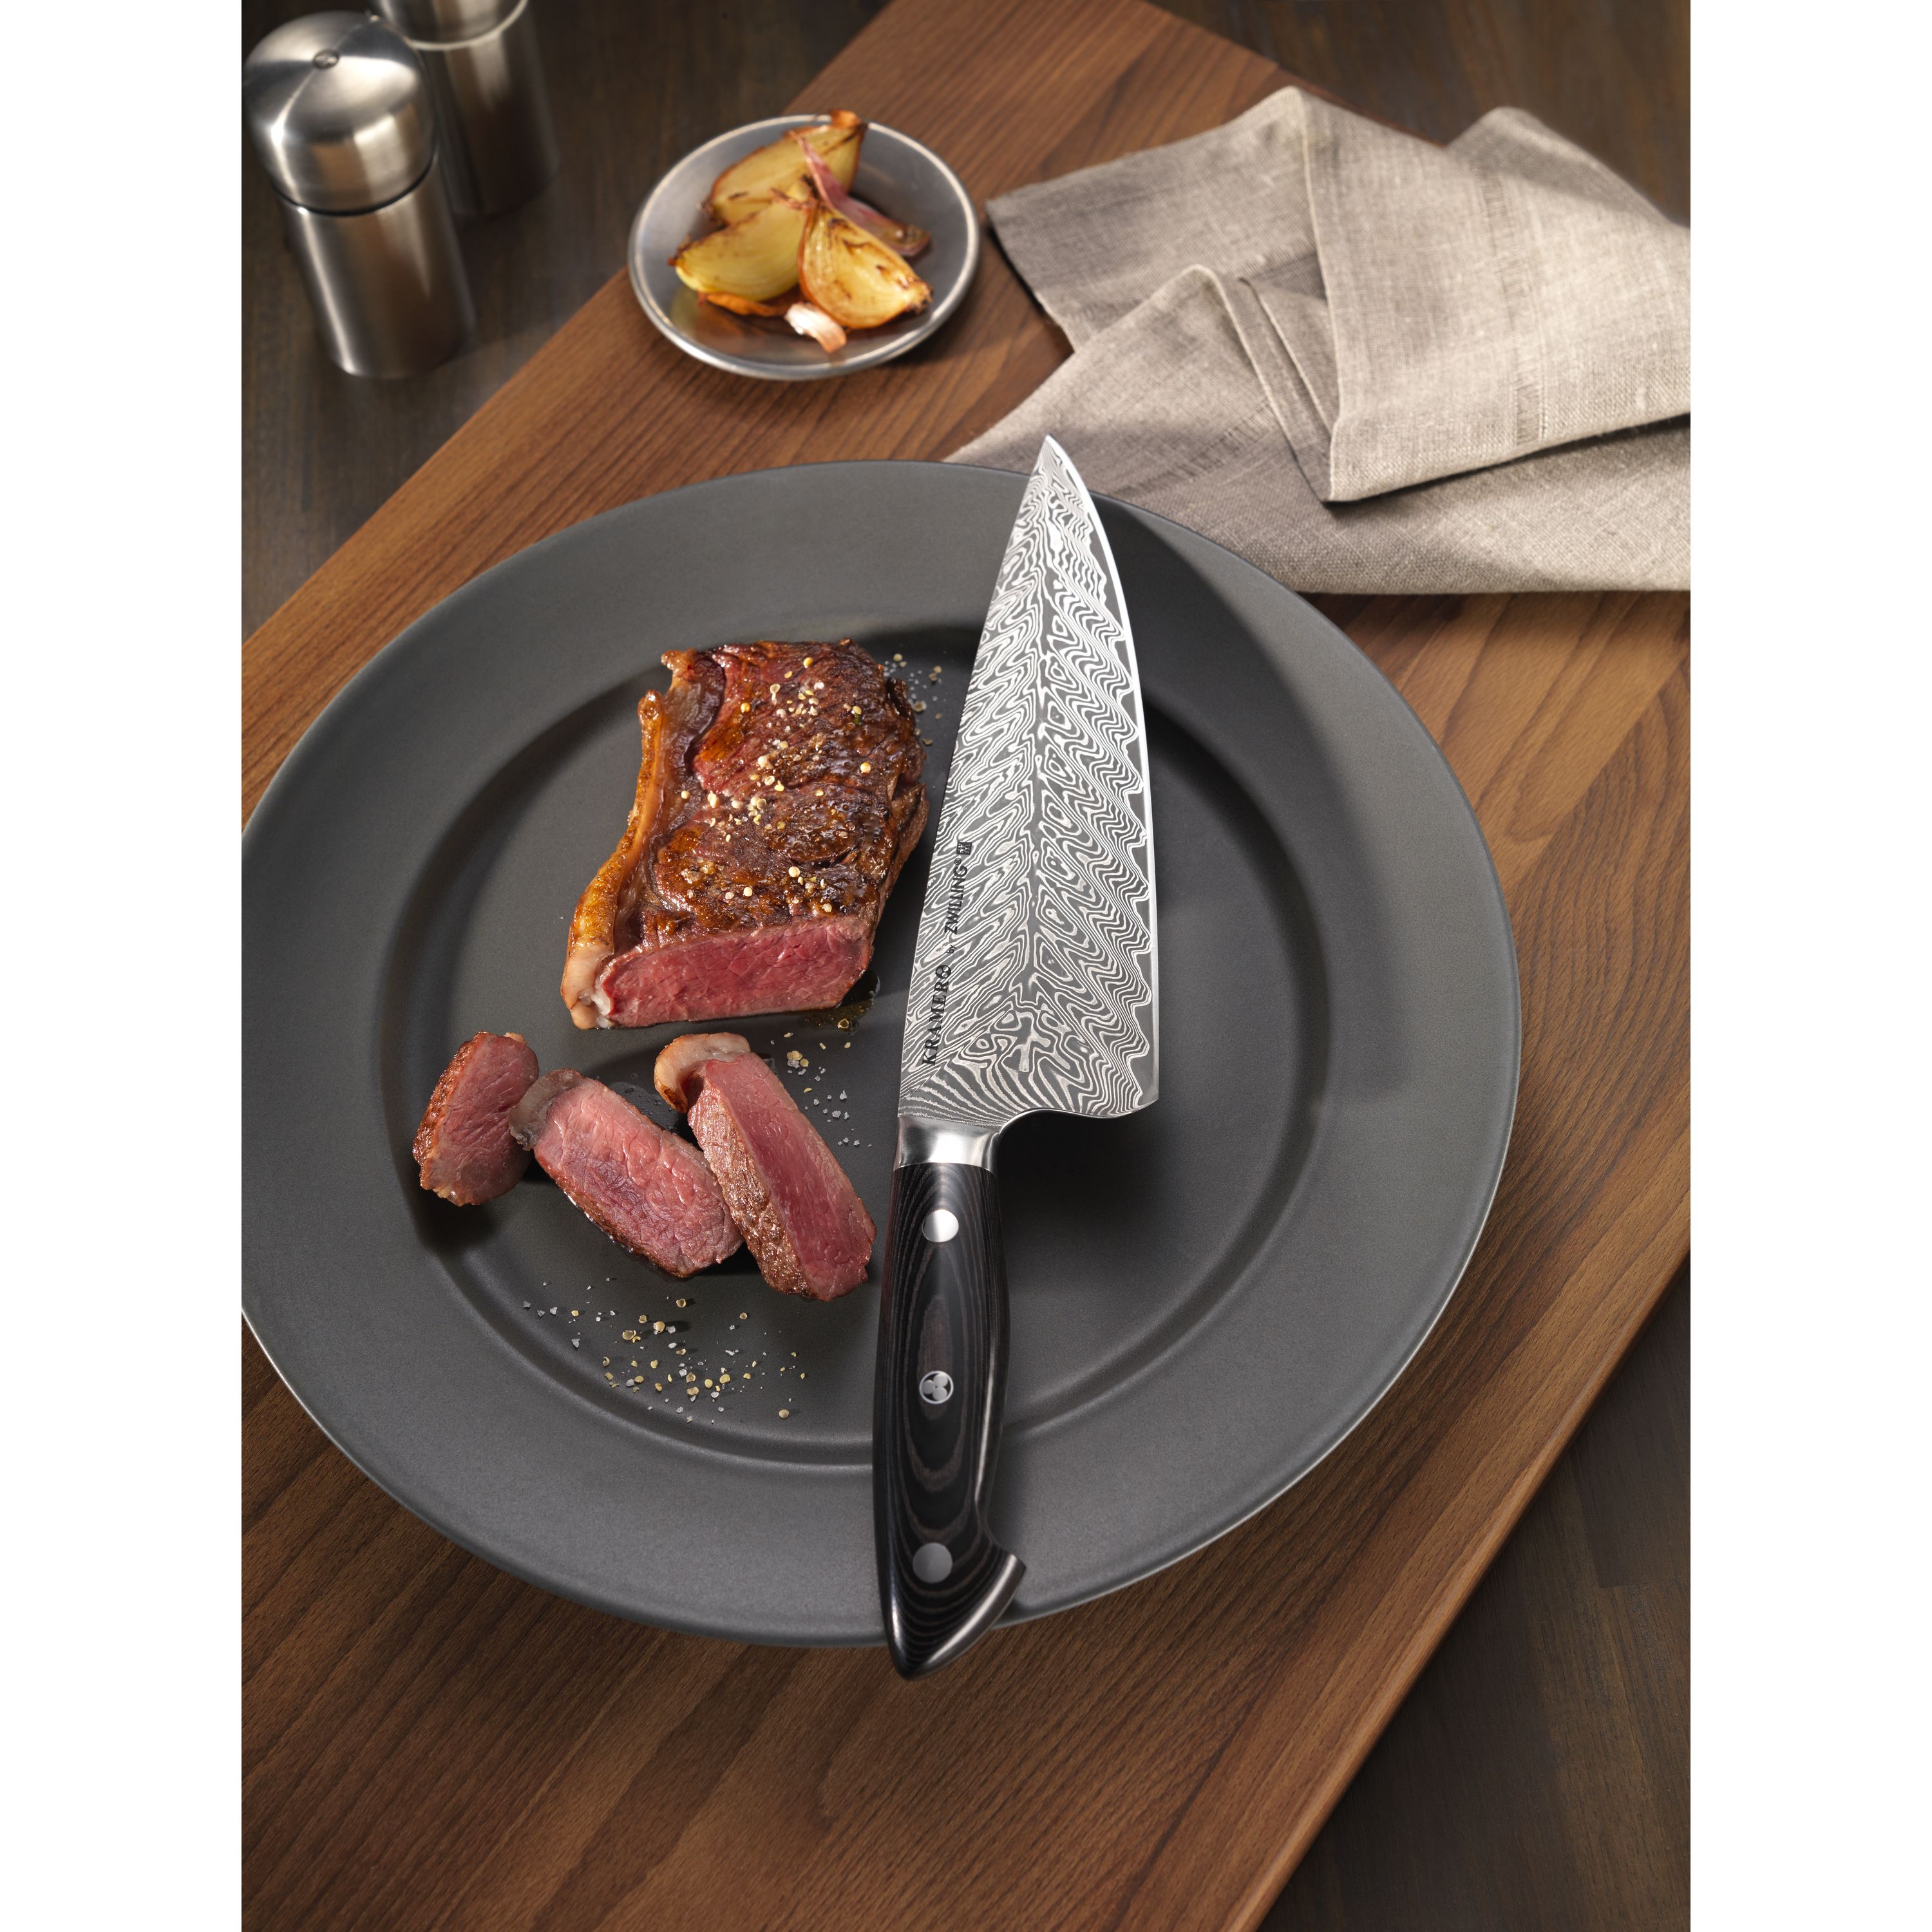 Buy ZWILLING Kramer - EUROLINE Stainless Damascus Collection Steak set